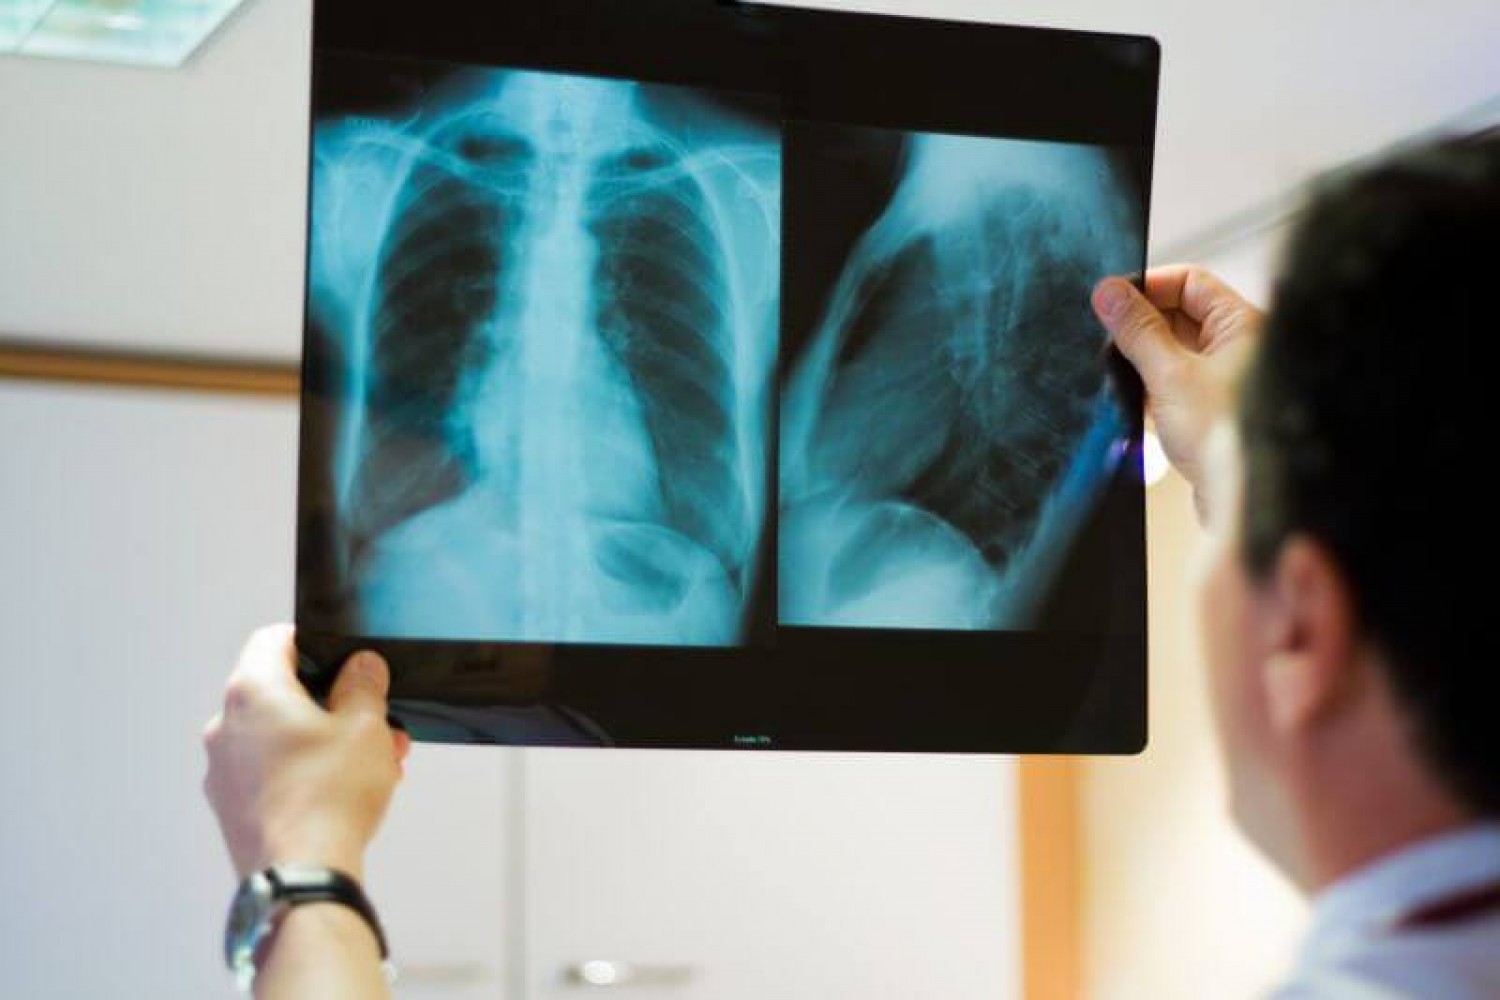 A tüdőgyógyász tanácsa: Mit tegyenek a légúti betegek a koronavírus járvány idején